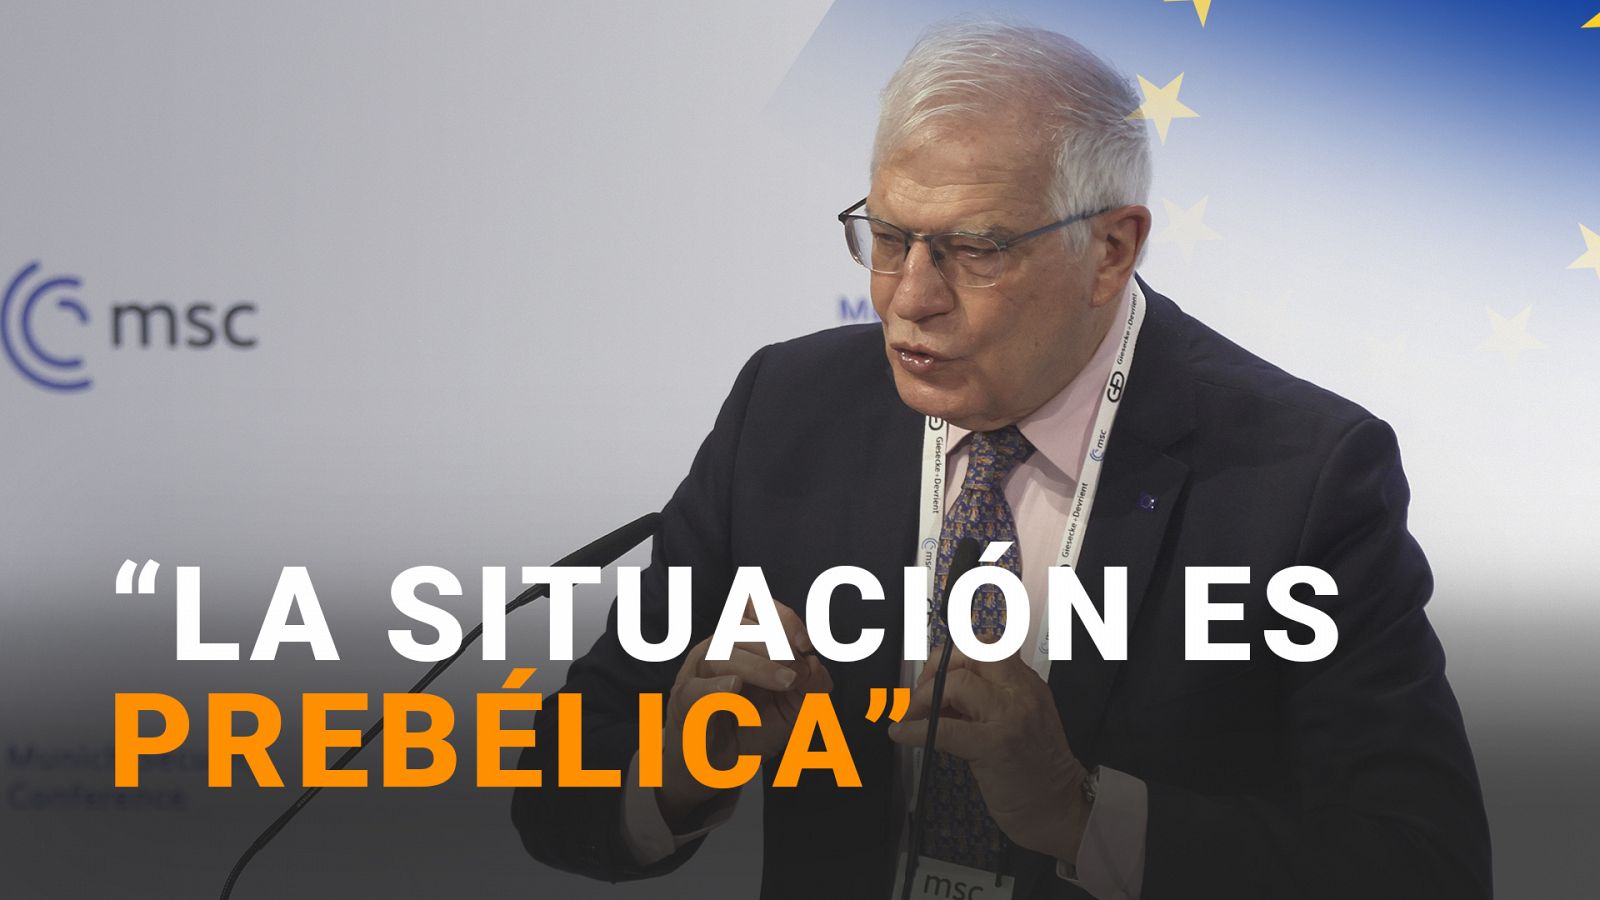 Borrell: "Hay una desinformación creciente sobre lo que pasa y la situación es prebélica"